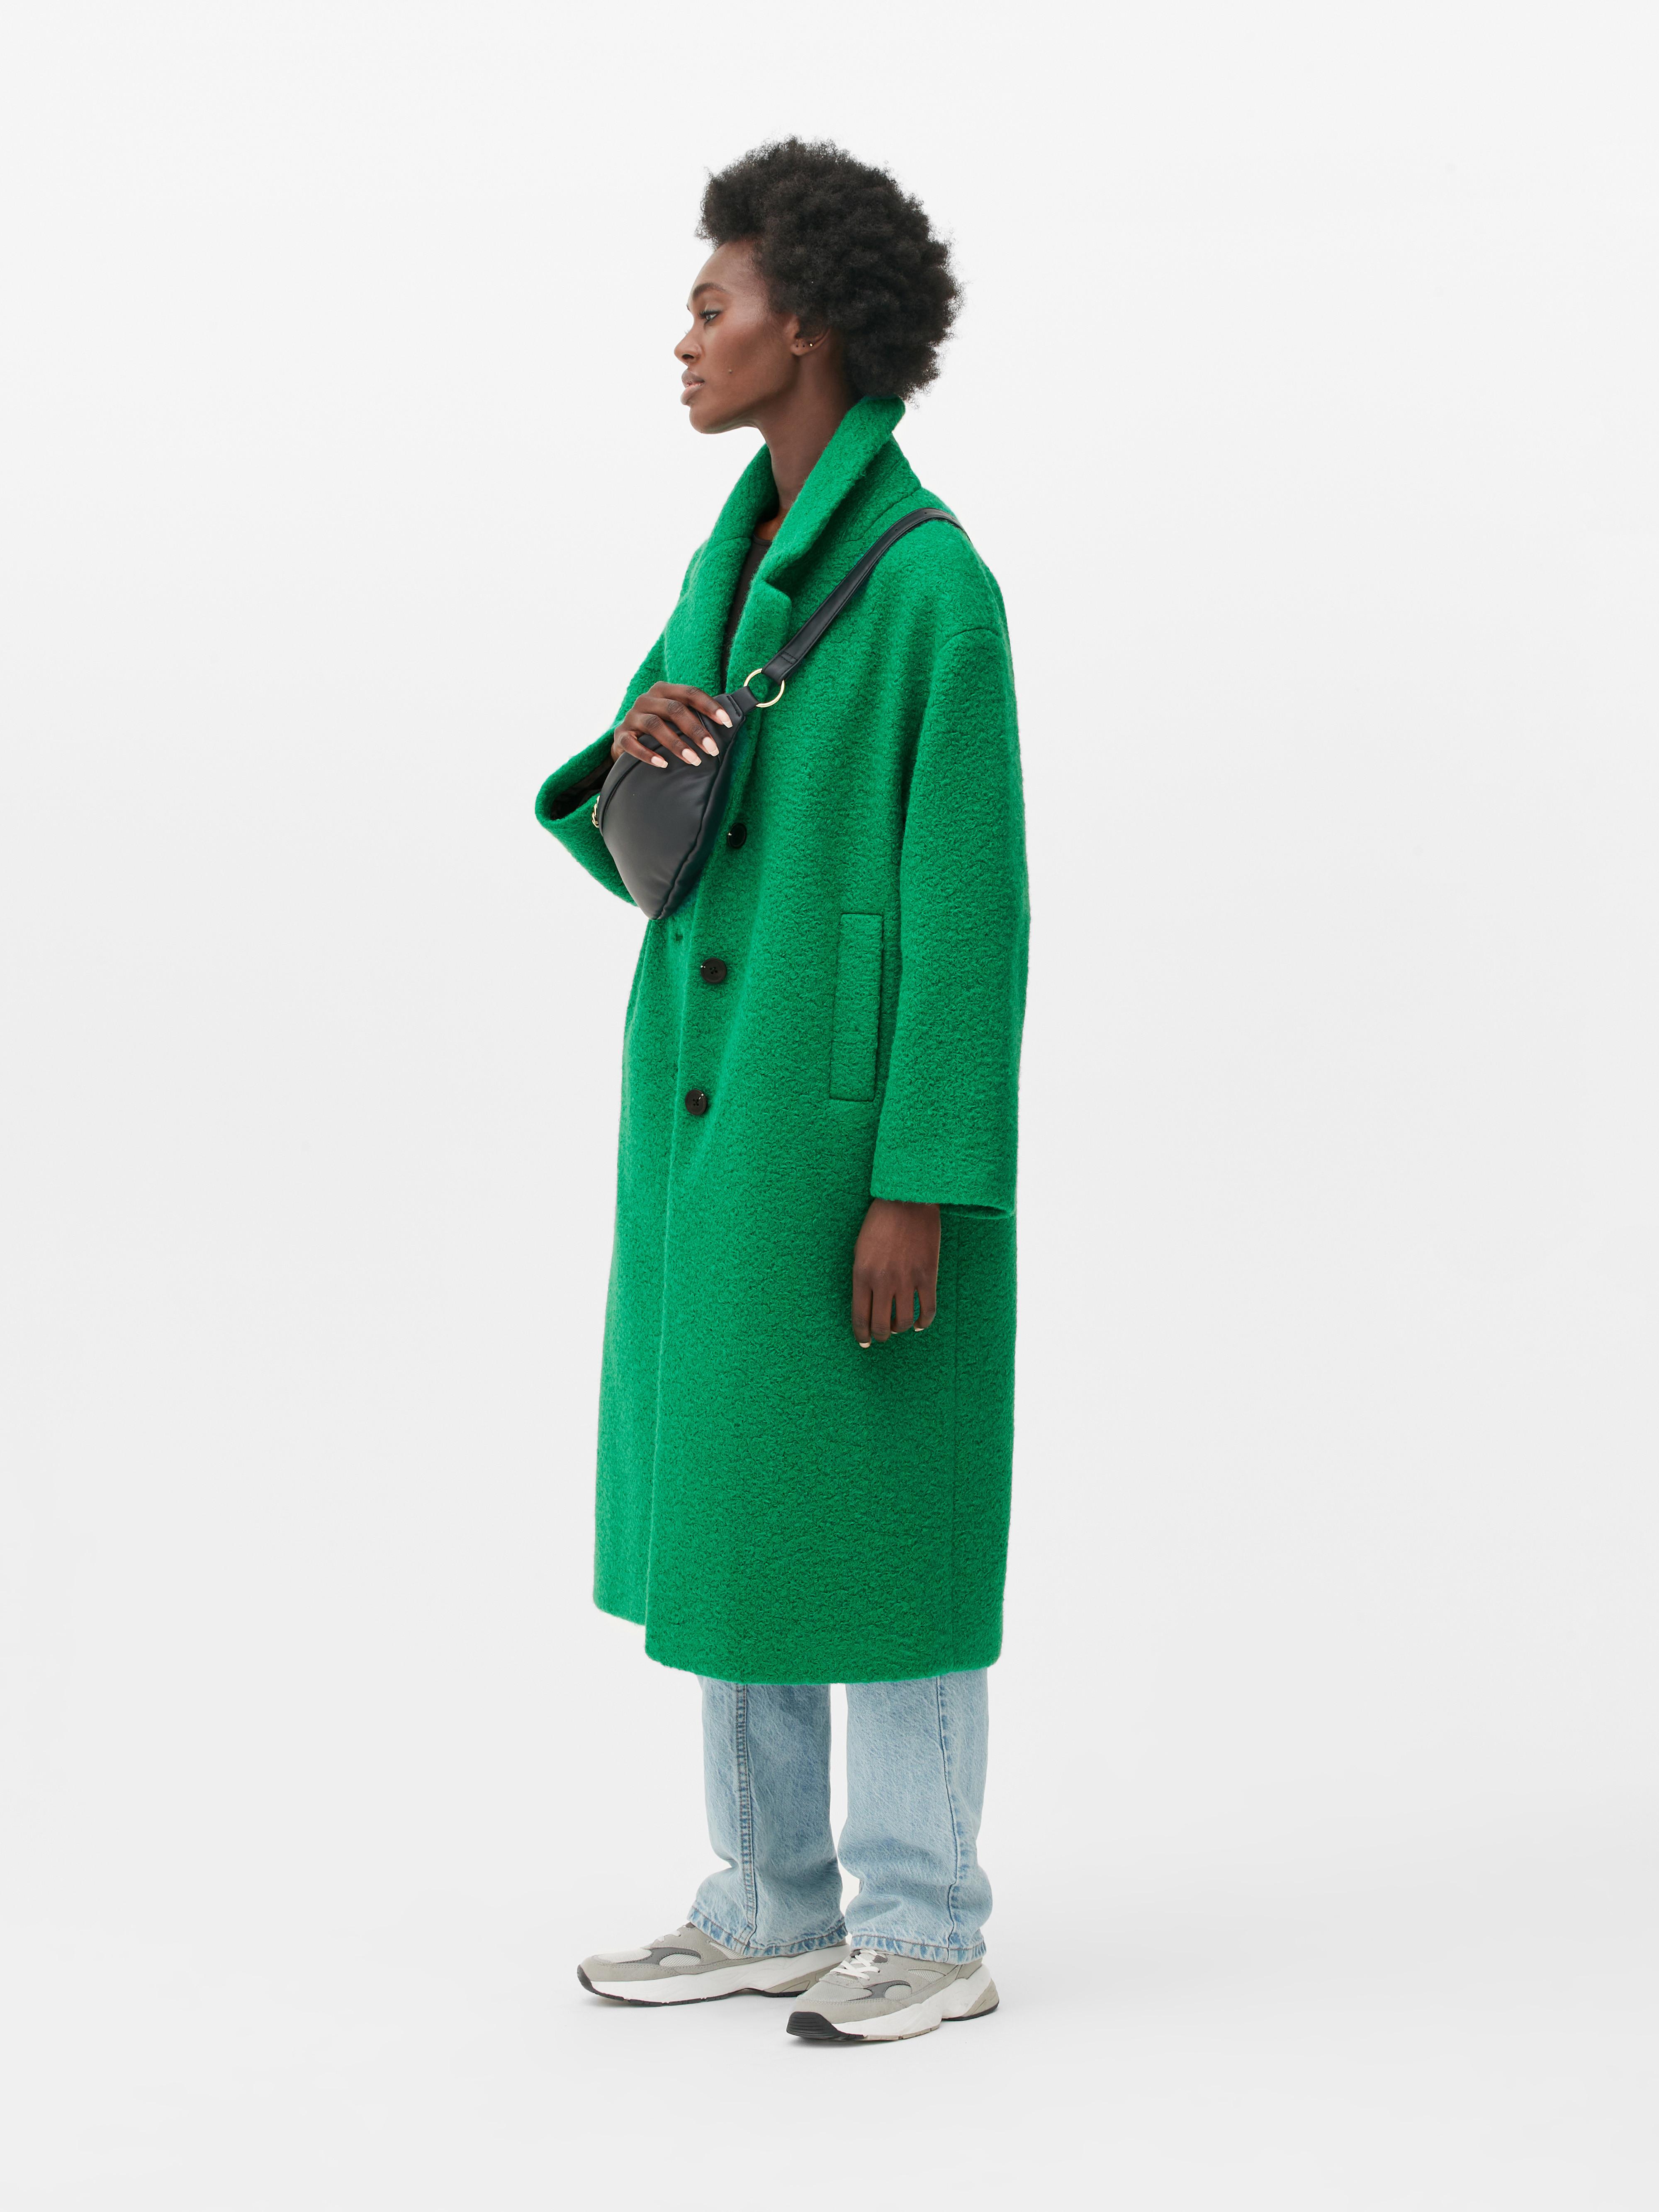 Women's Coats & Jackets | Trench Coats, Bombers & Winter Jackets | Penneys